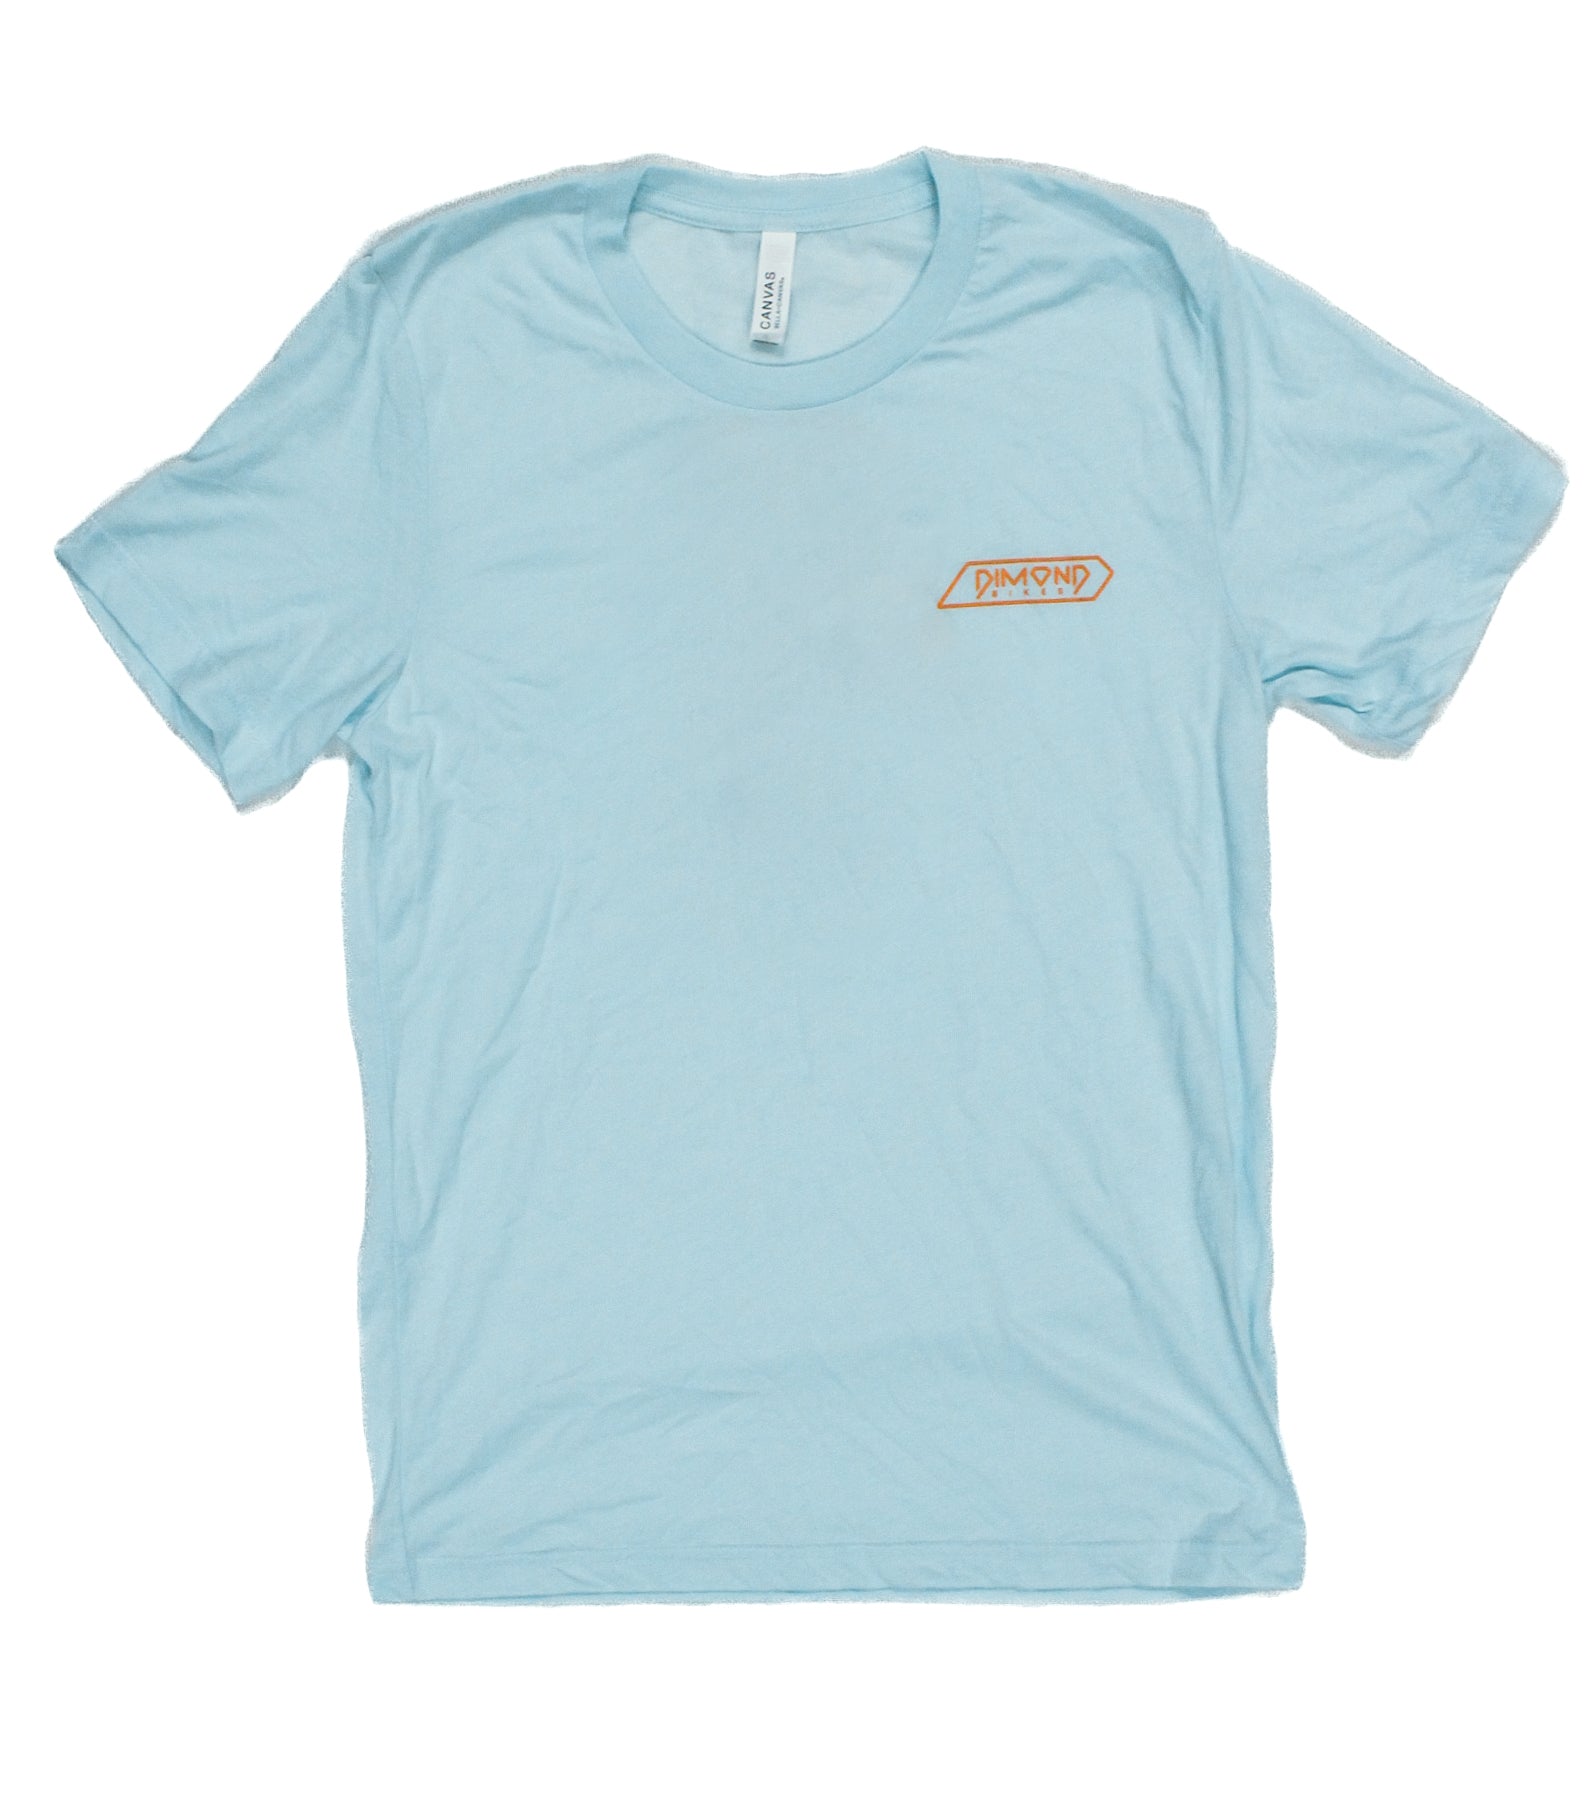 Kona Dimond T-Shirt Version 2